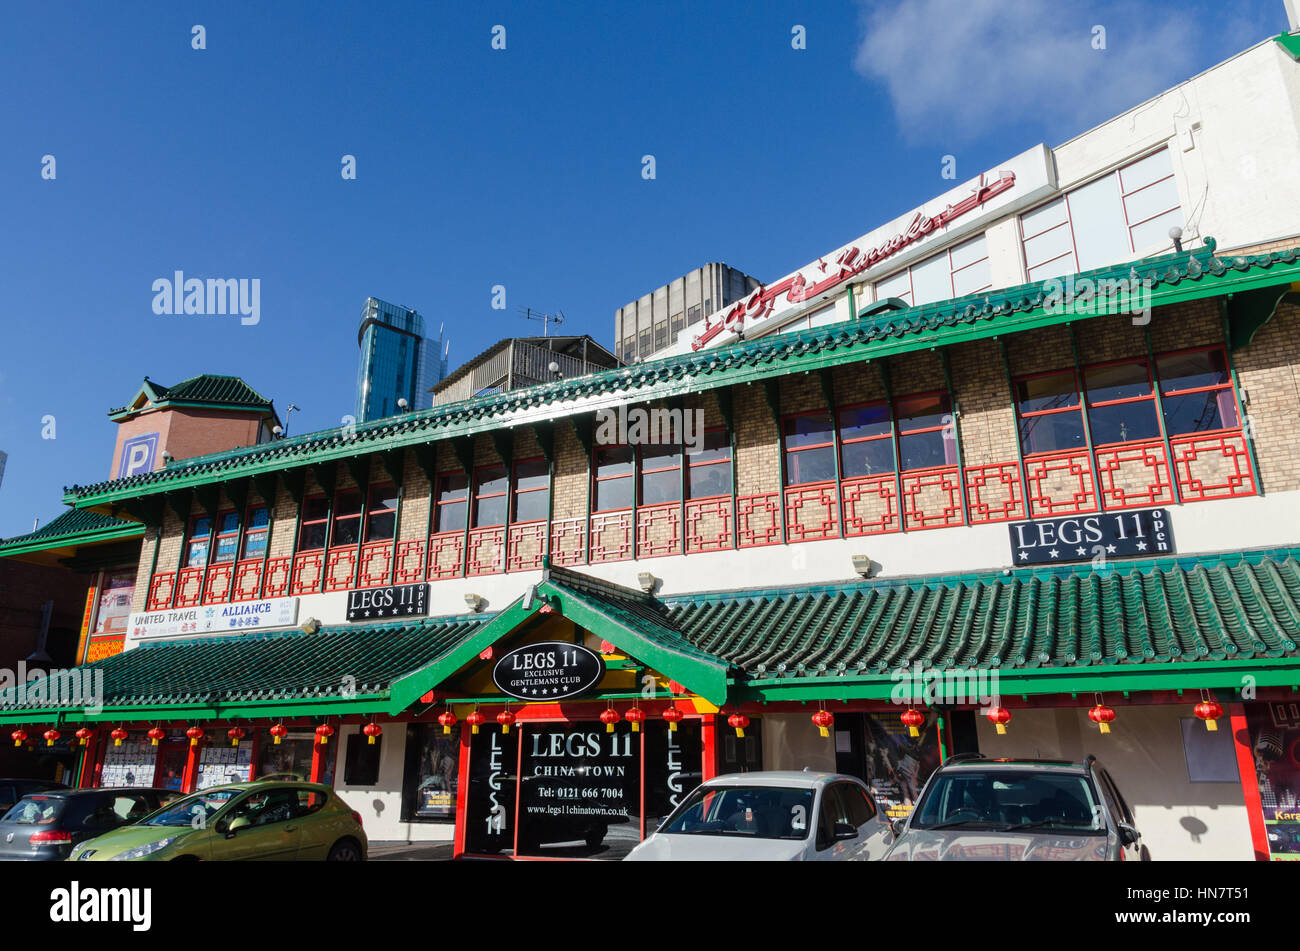 Chinesischer Pagode Gebäude in Birminghams chinesische Viertel beherbergt Beine 11 Nachtclub Stockfoto